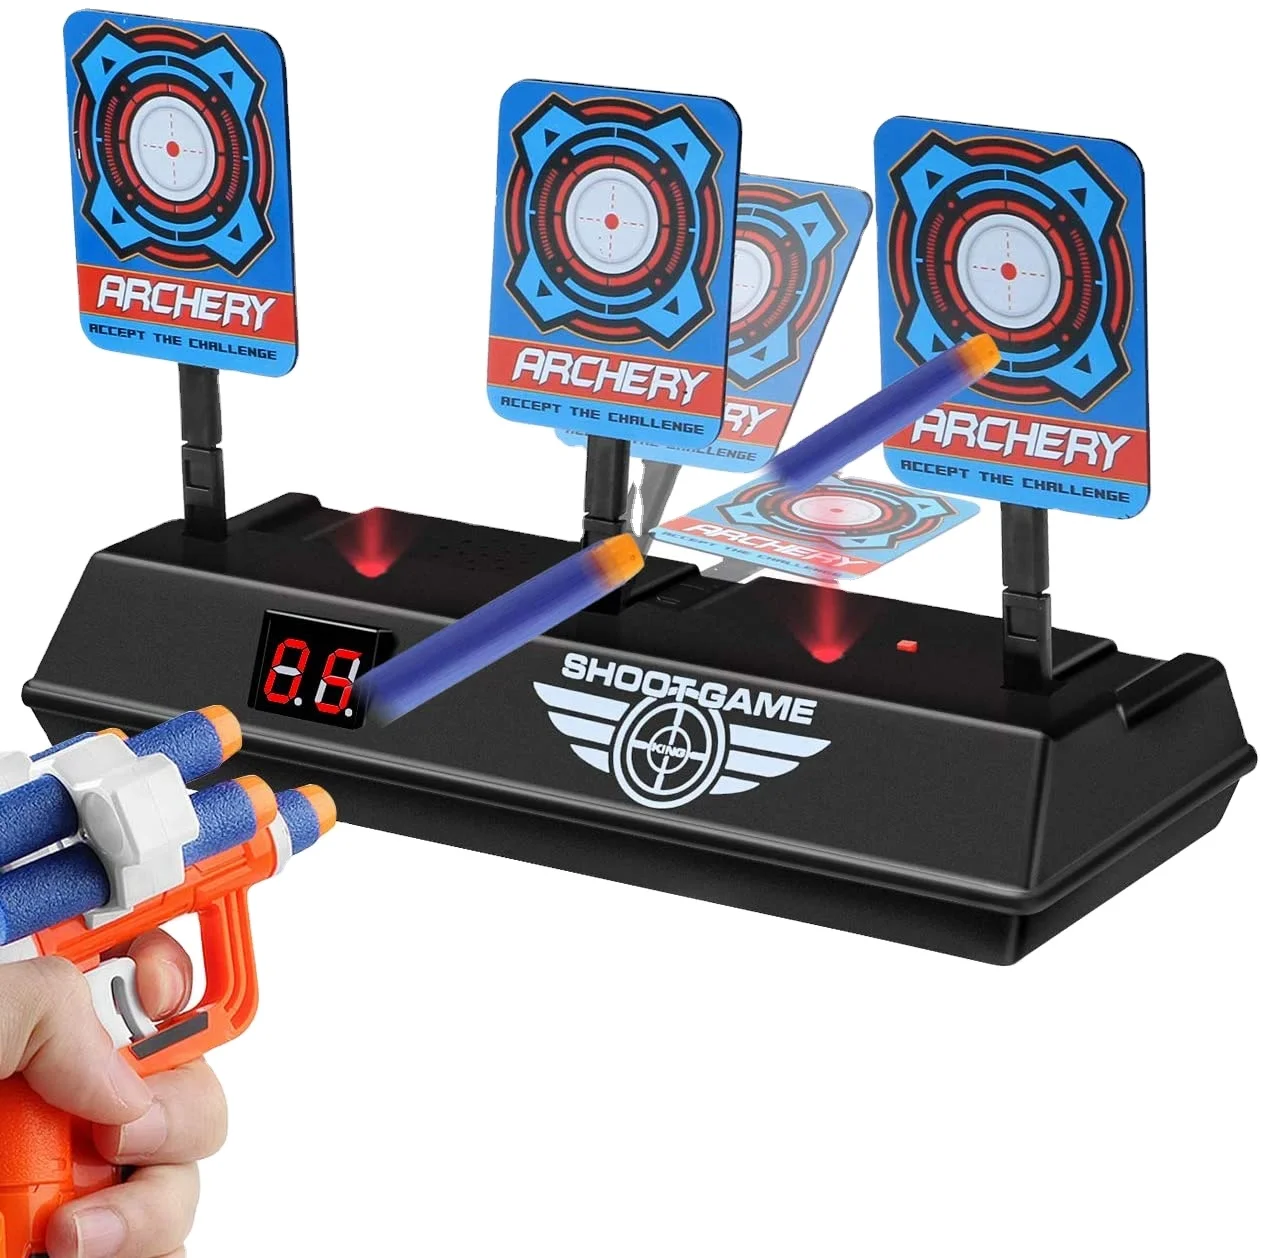 Source Electronic Target Scoring Auto Reset Shooting Games Digital Target for Ne rf Guns Blaster Toys Kids on m.alibaba